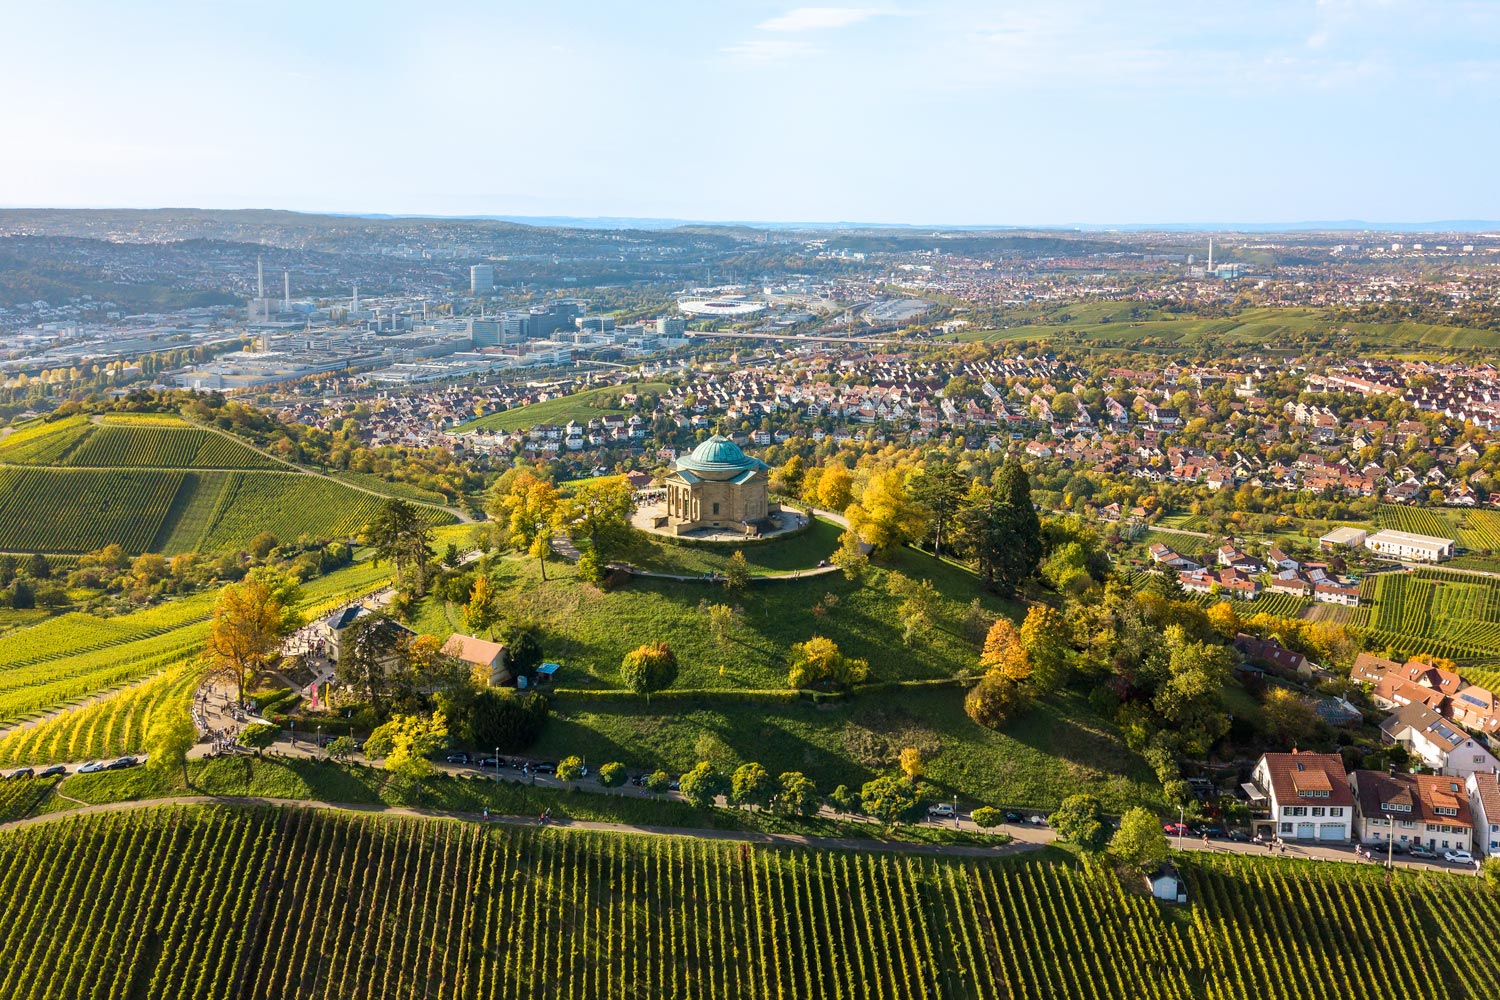 Auf einem kleinen Berg steht eine Kapelle eingerahmt von Wiesen, Feldern und Bäumen. Im Hintergrund sieht man die Hausdächer von Stuttgart.